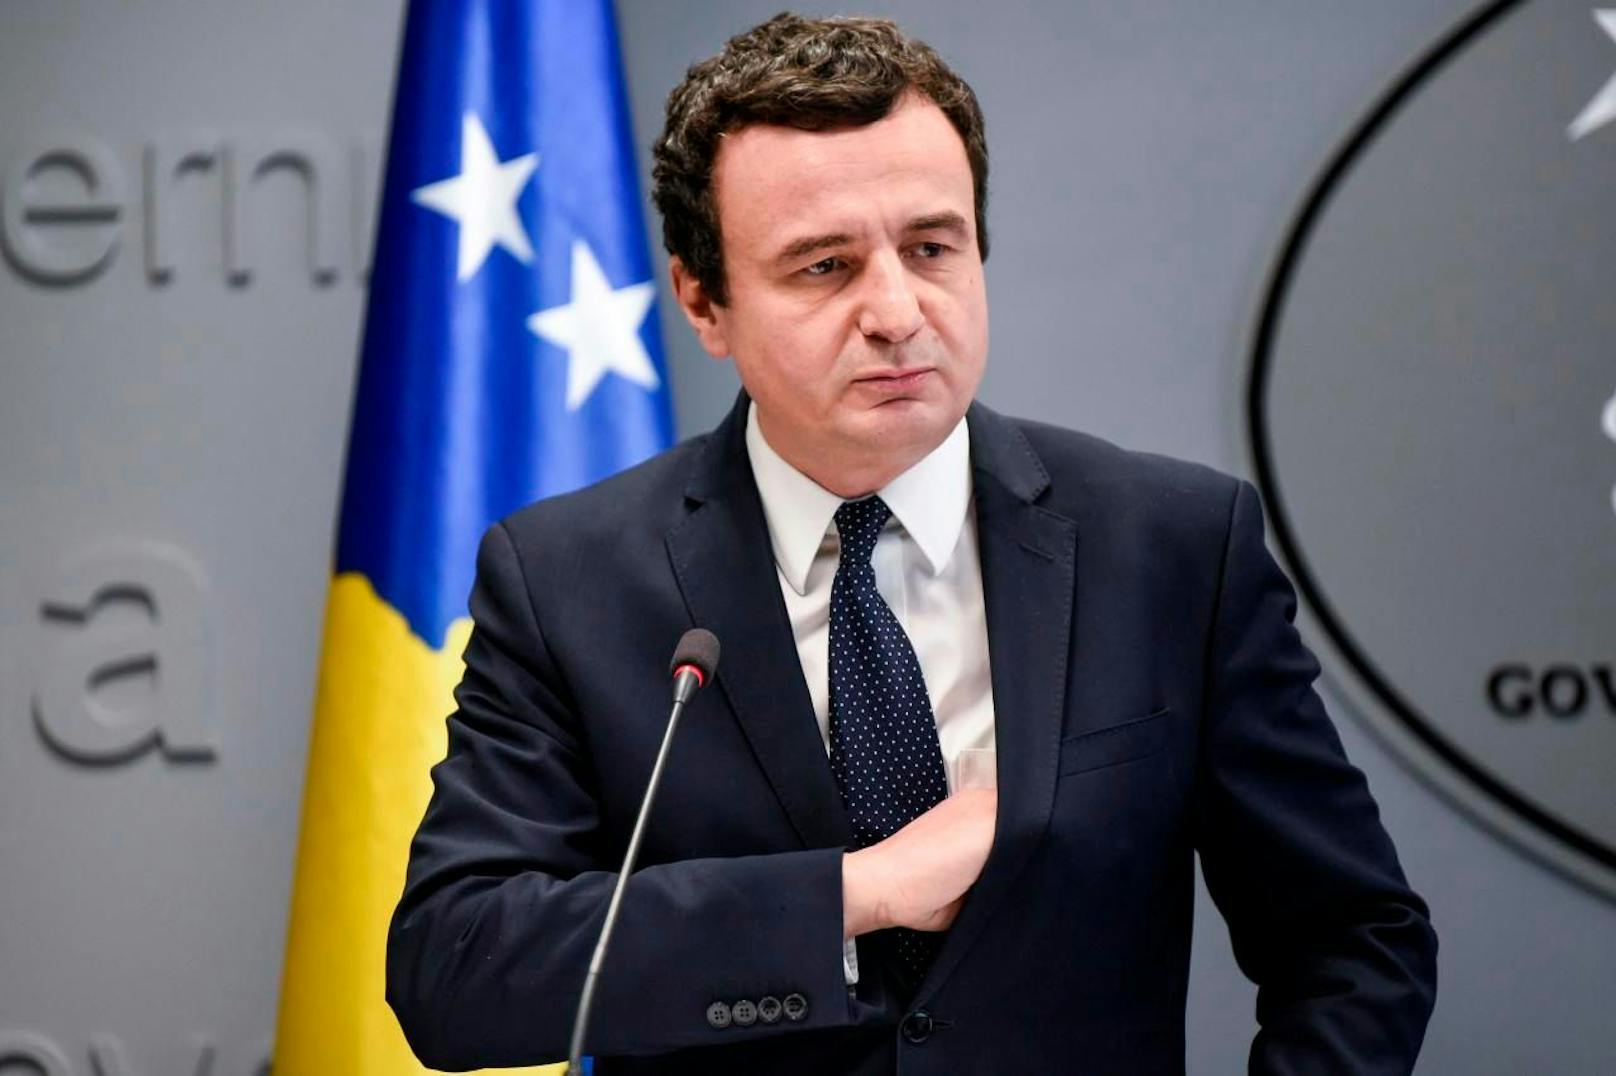 Nach nur sechs Wochen im Amt wurde der populäre kosovarische Premierminister Albin Kurti in der Nacht auf Donnerstag vom Parlament entmachtet.